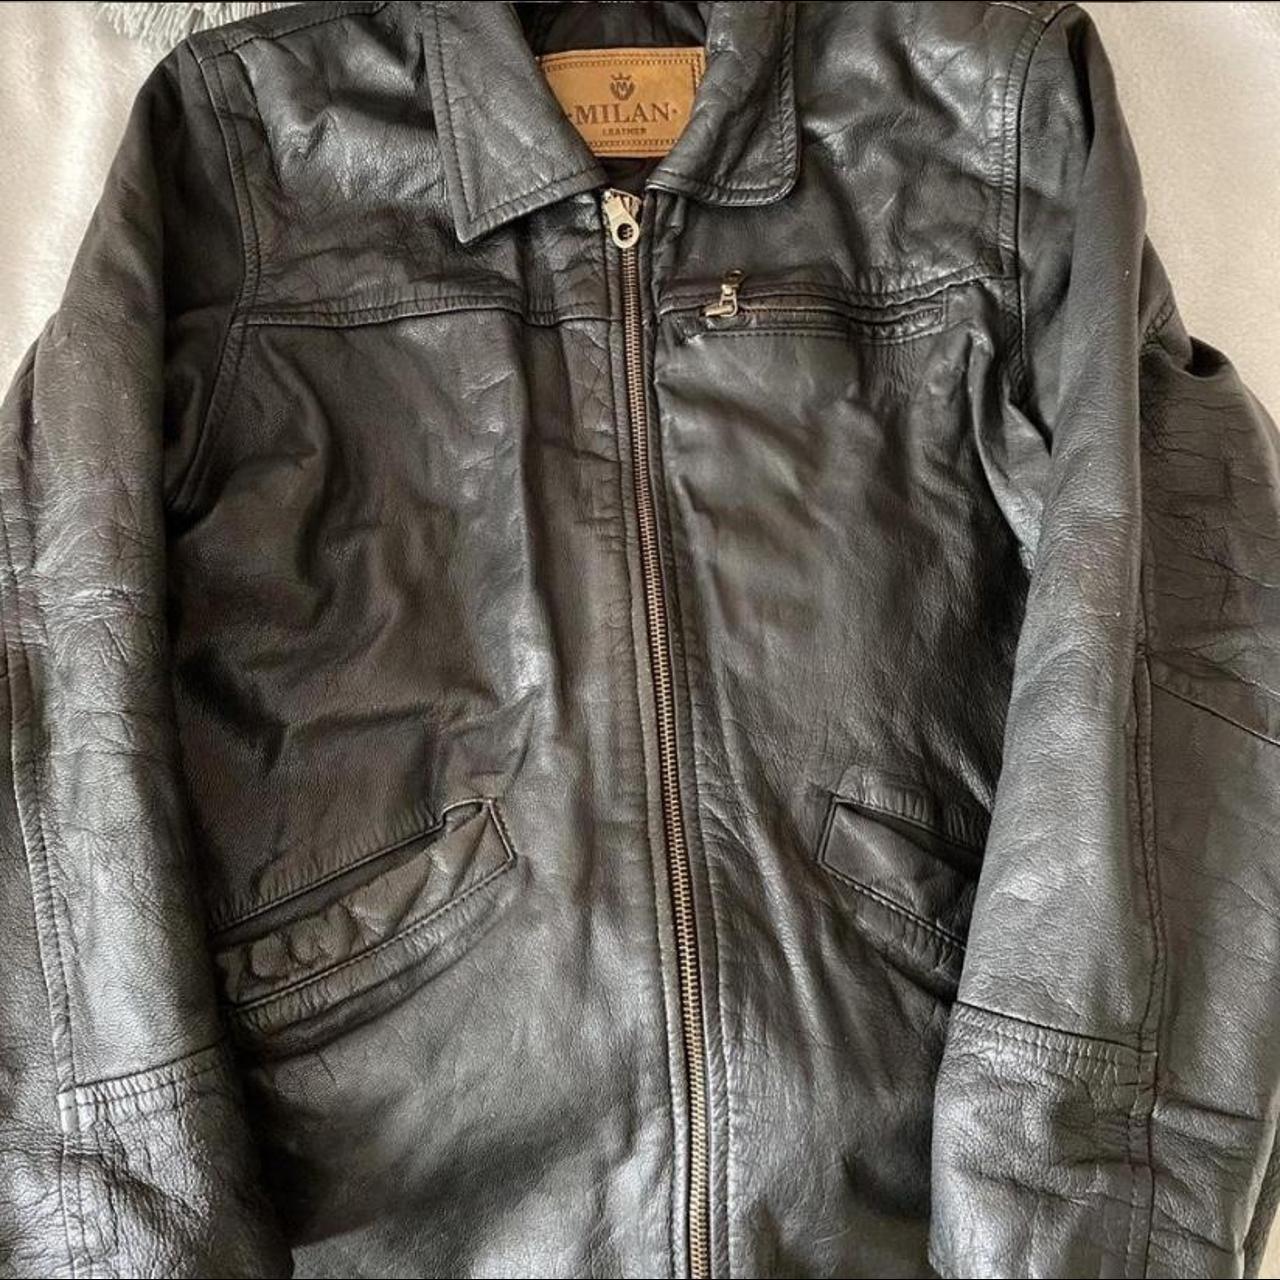 repop- vintage real leather jacket 📷 stunning just... - Depop